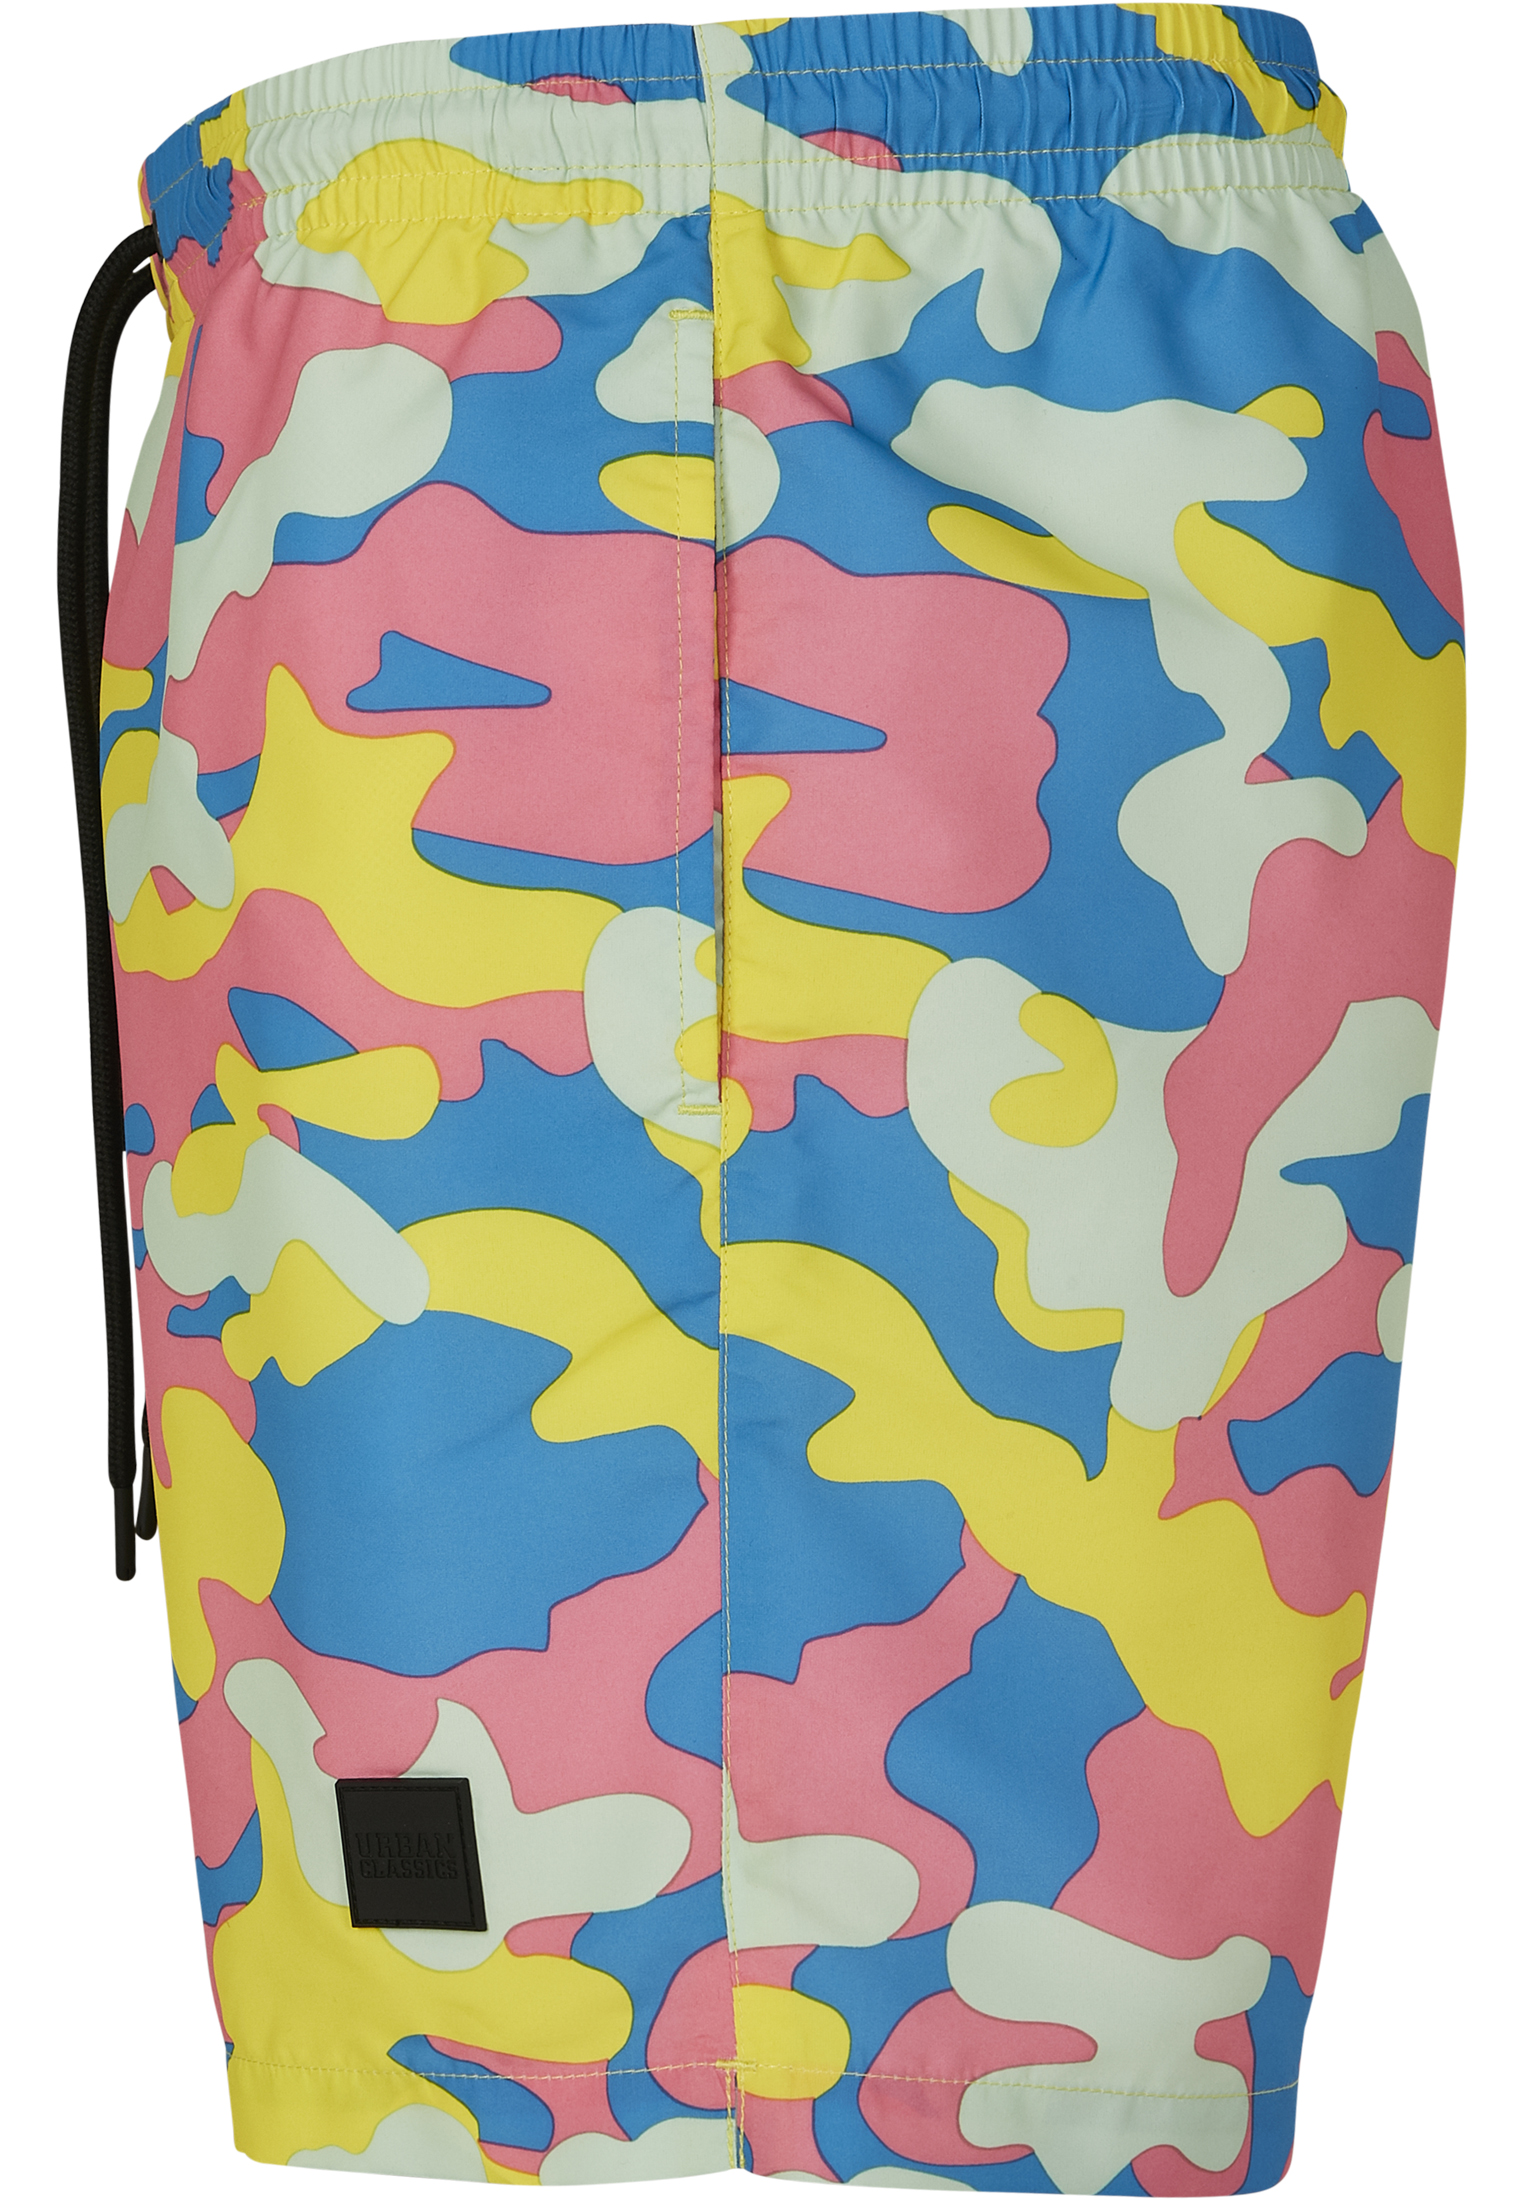 Plus Size Camo Swim Shorts in Farbe happy camo